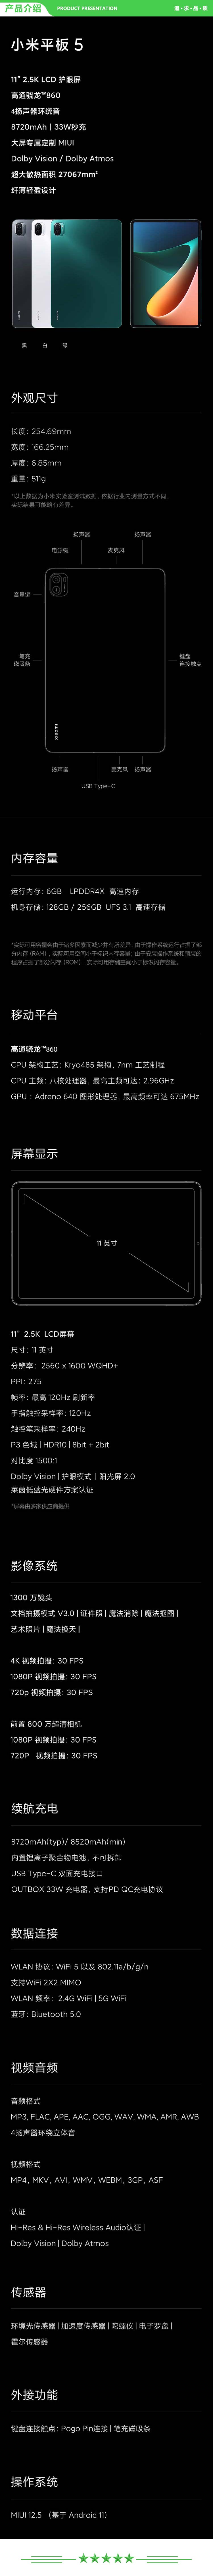 小米 xiaomi 平板5 平板电脑（11英寸2.5K高清 120Hz 骁龙860 6G+128GB 33W快充 杜比影音娱乐办公 白色）.jpg